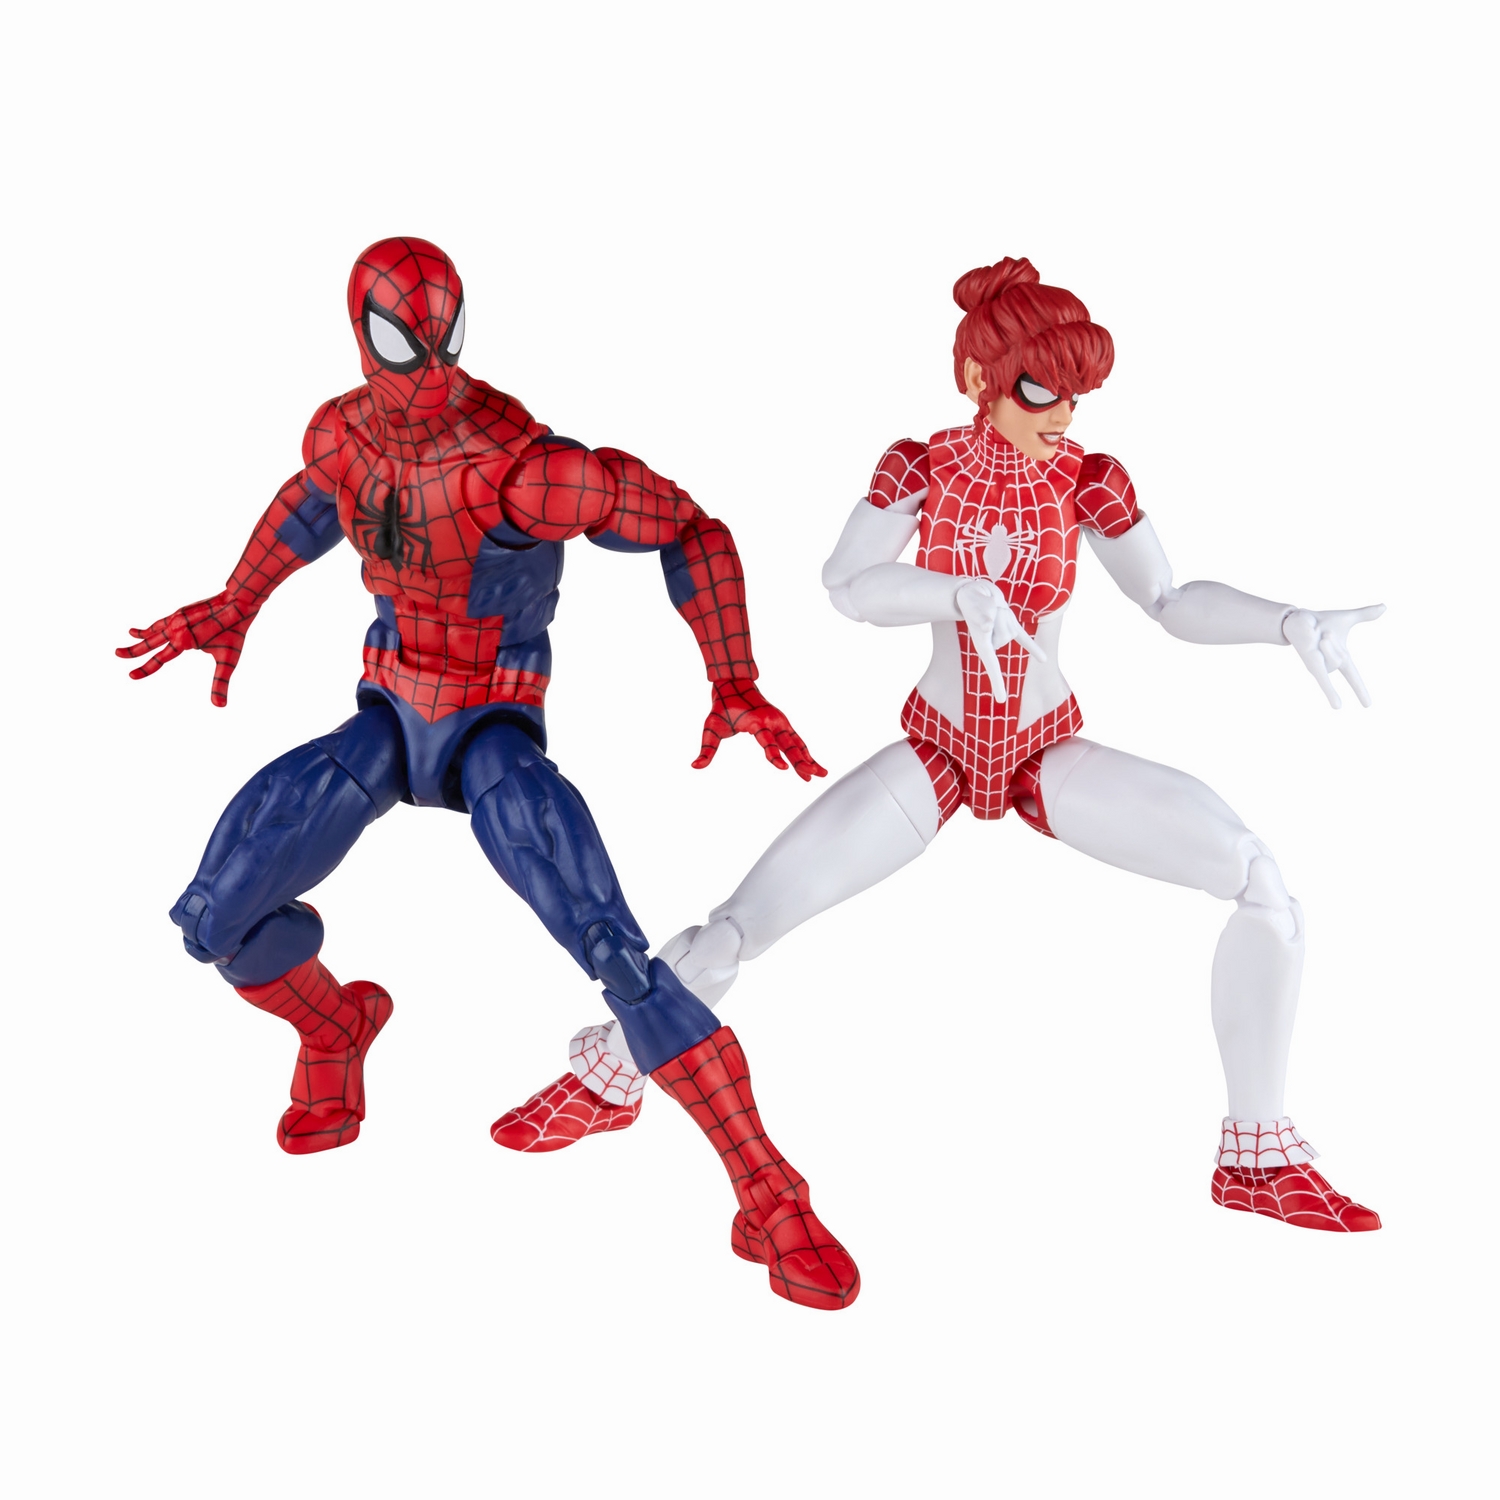 Marvel Legends Series Spider-Man and Marvel’s Spinneret - Image 12.jpg